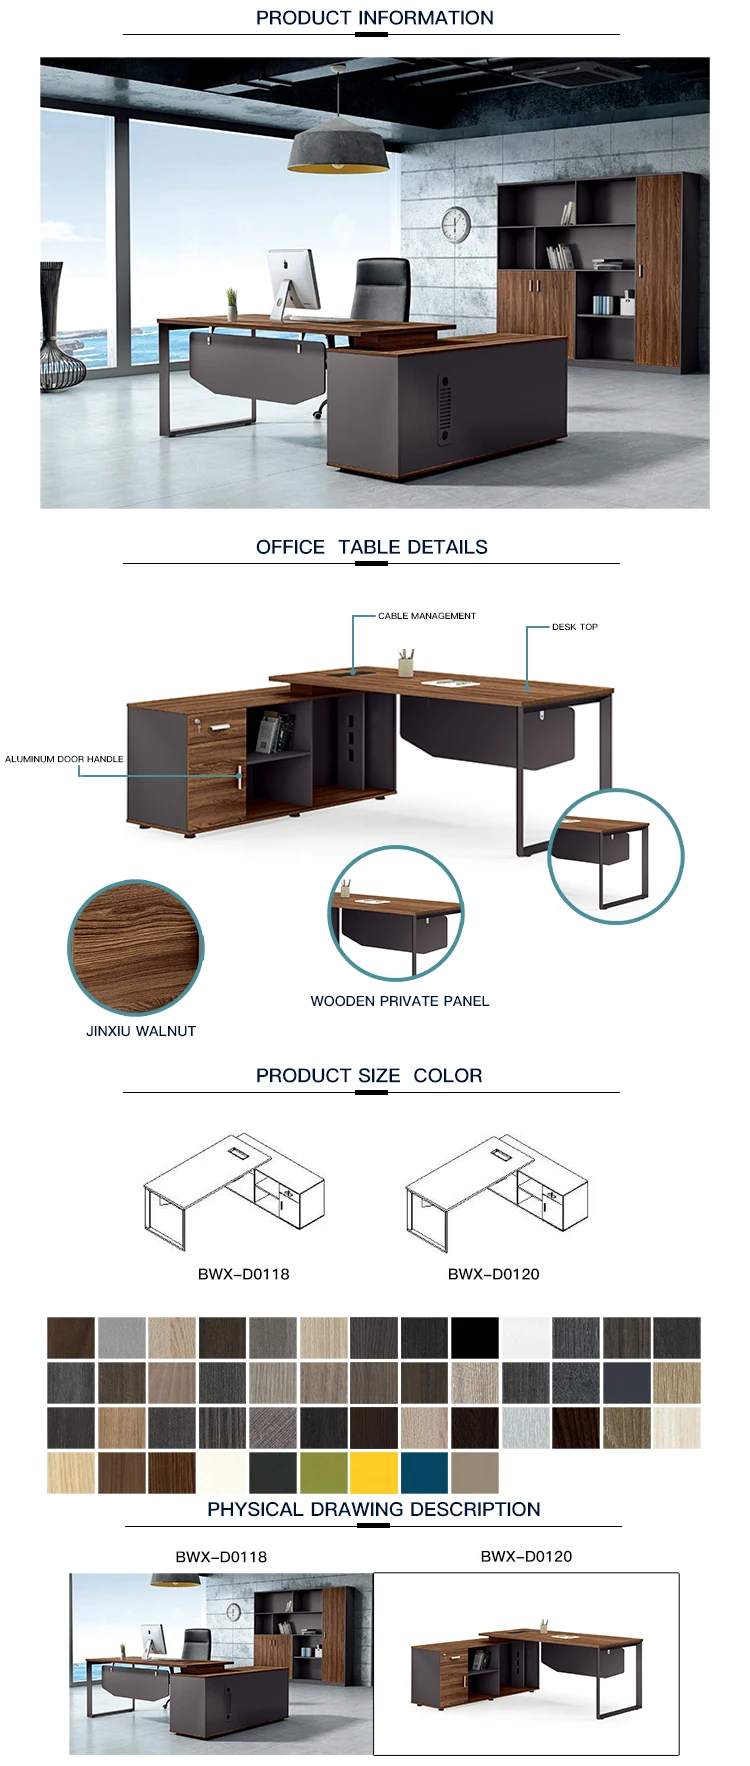 U shape metal leg wood tables 16mm MFC walnut color 2m manager office desk